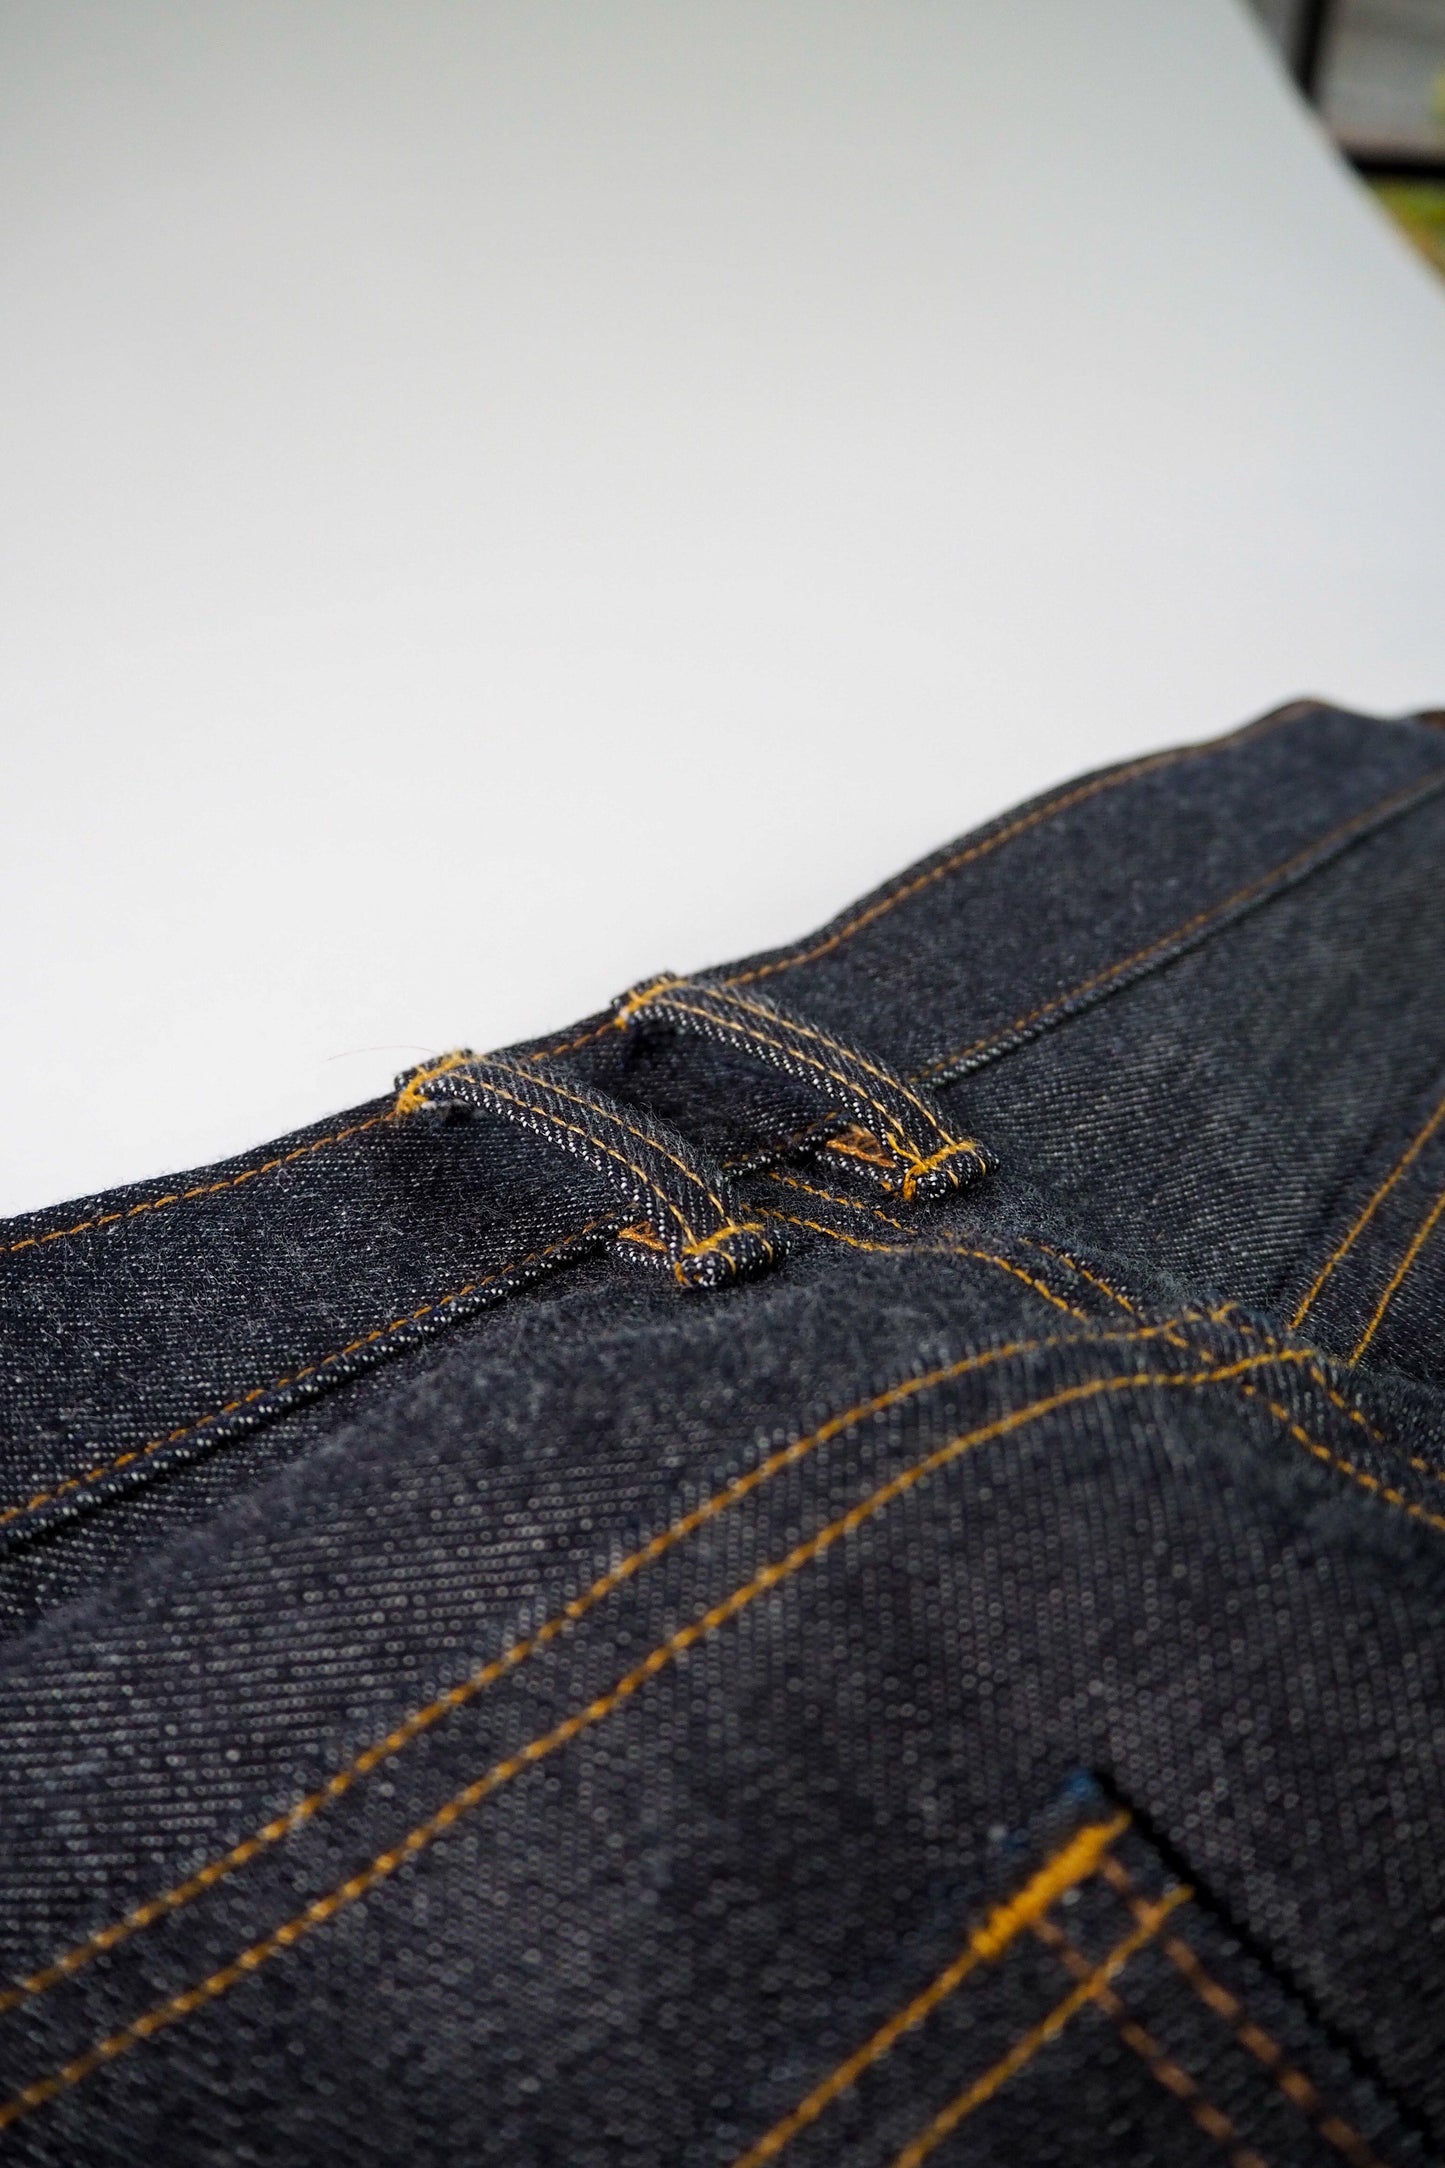 Custom Jeans - Skinner Co.